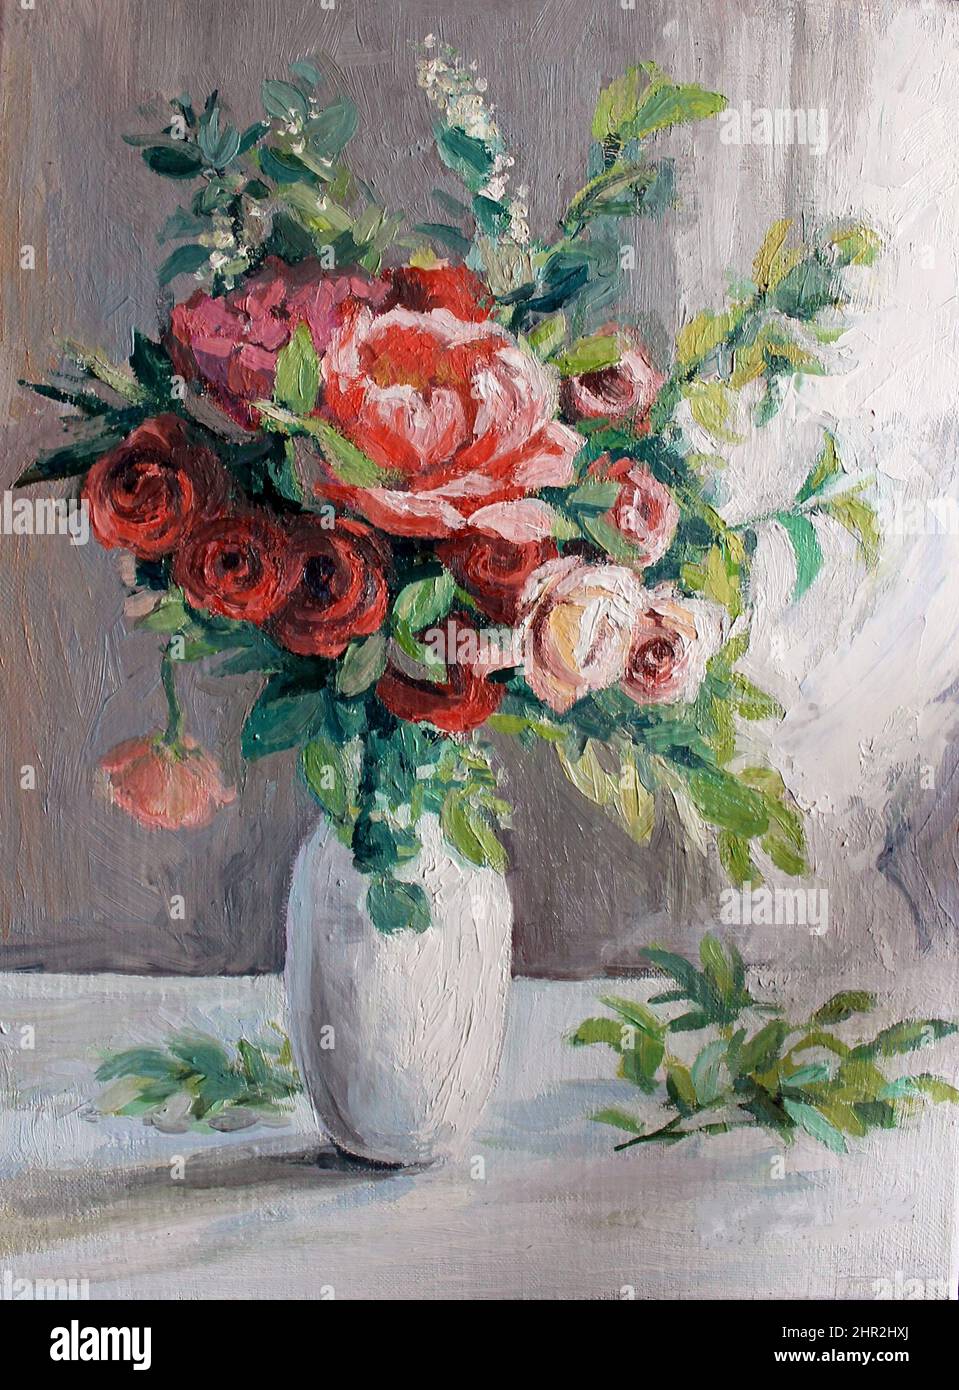 Pittura ad olio: rose in vaso bianco. Trama di vernice. I fiori sono dipinti  in modo impressionistico. Colori pastello luminosi, luce tenue Foto stock -  Alamy